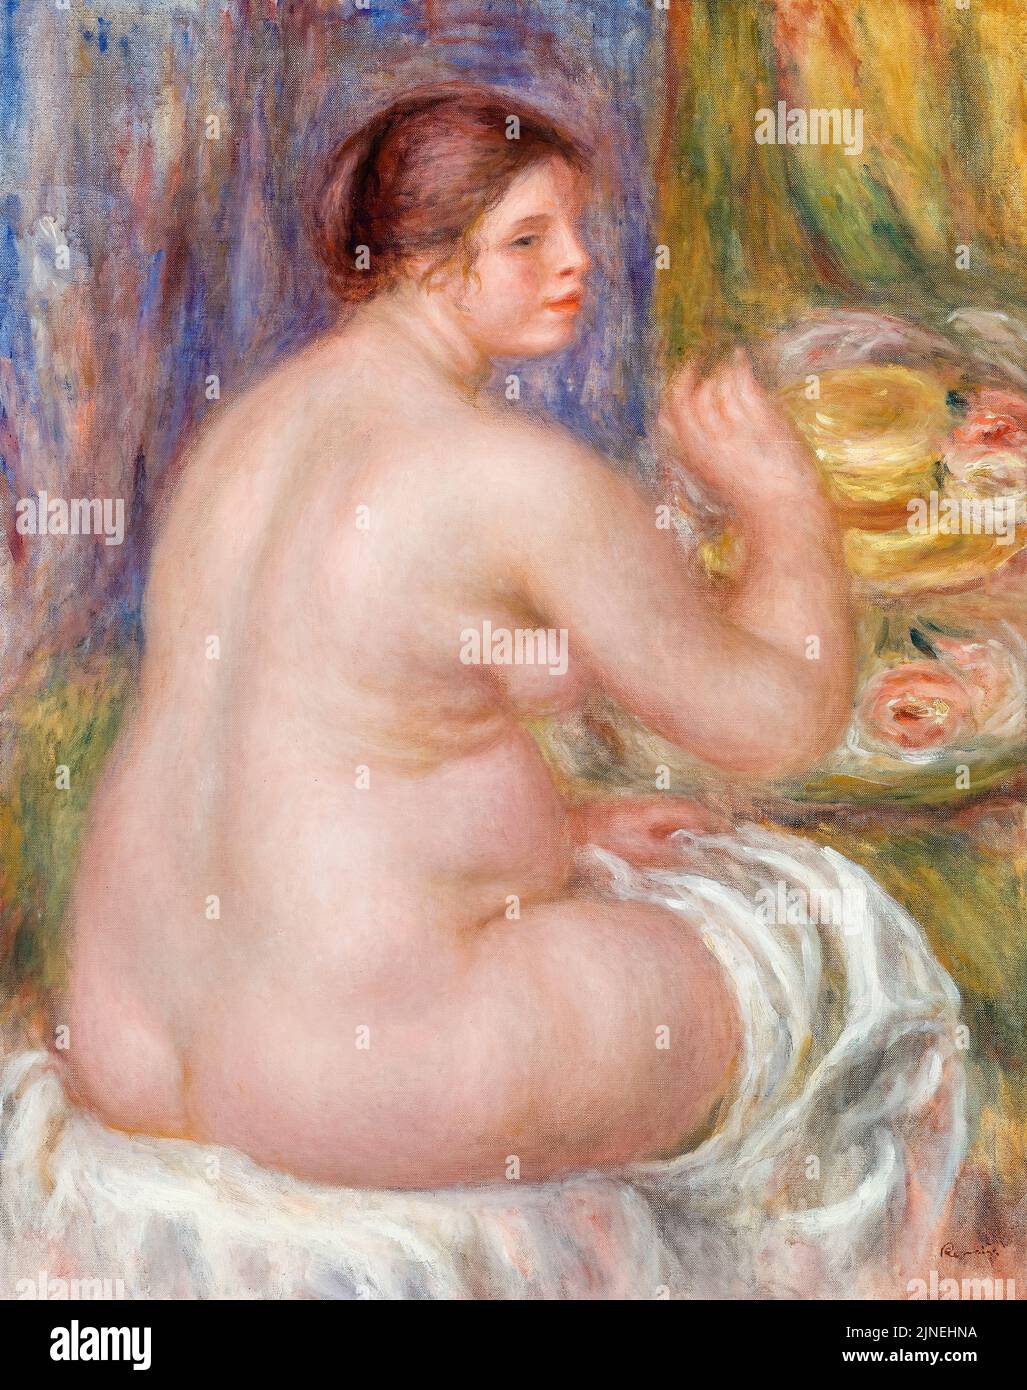 Pierre Auguste Renoir, nu du dos, peinture à l'huile sur toile, 1917 Banque D'Images